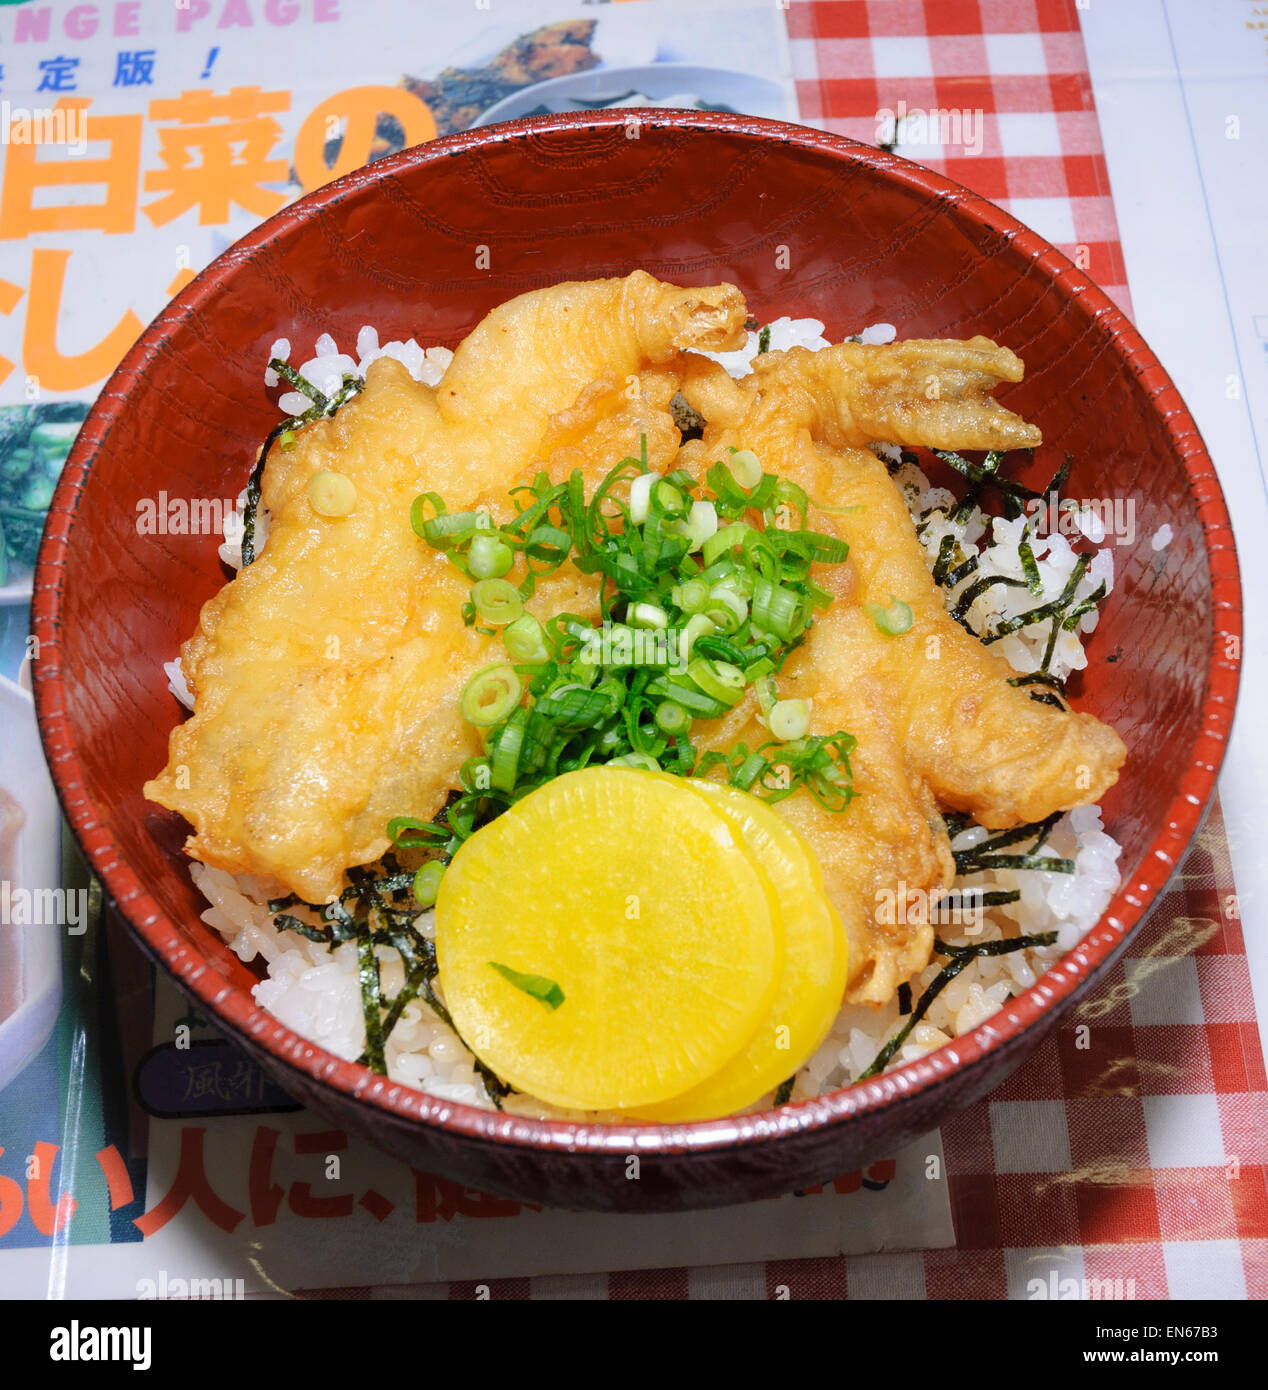 Fugu Sehne (Fugu-Tempura auf Reis). Fugu (Kugelfisch) ist bekannt für seine giftigen Potenzial. Japan; Japanisches Essen; Mahlzeit; Gericht Stockfoto